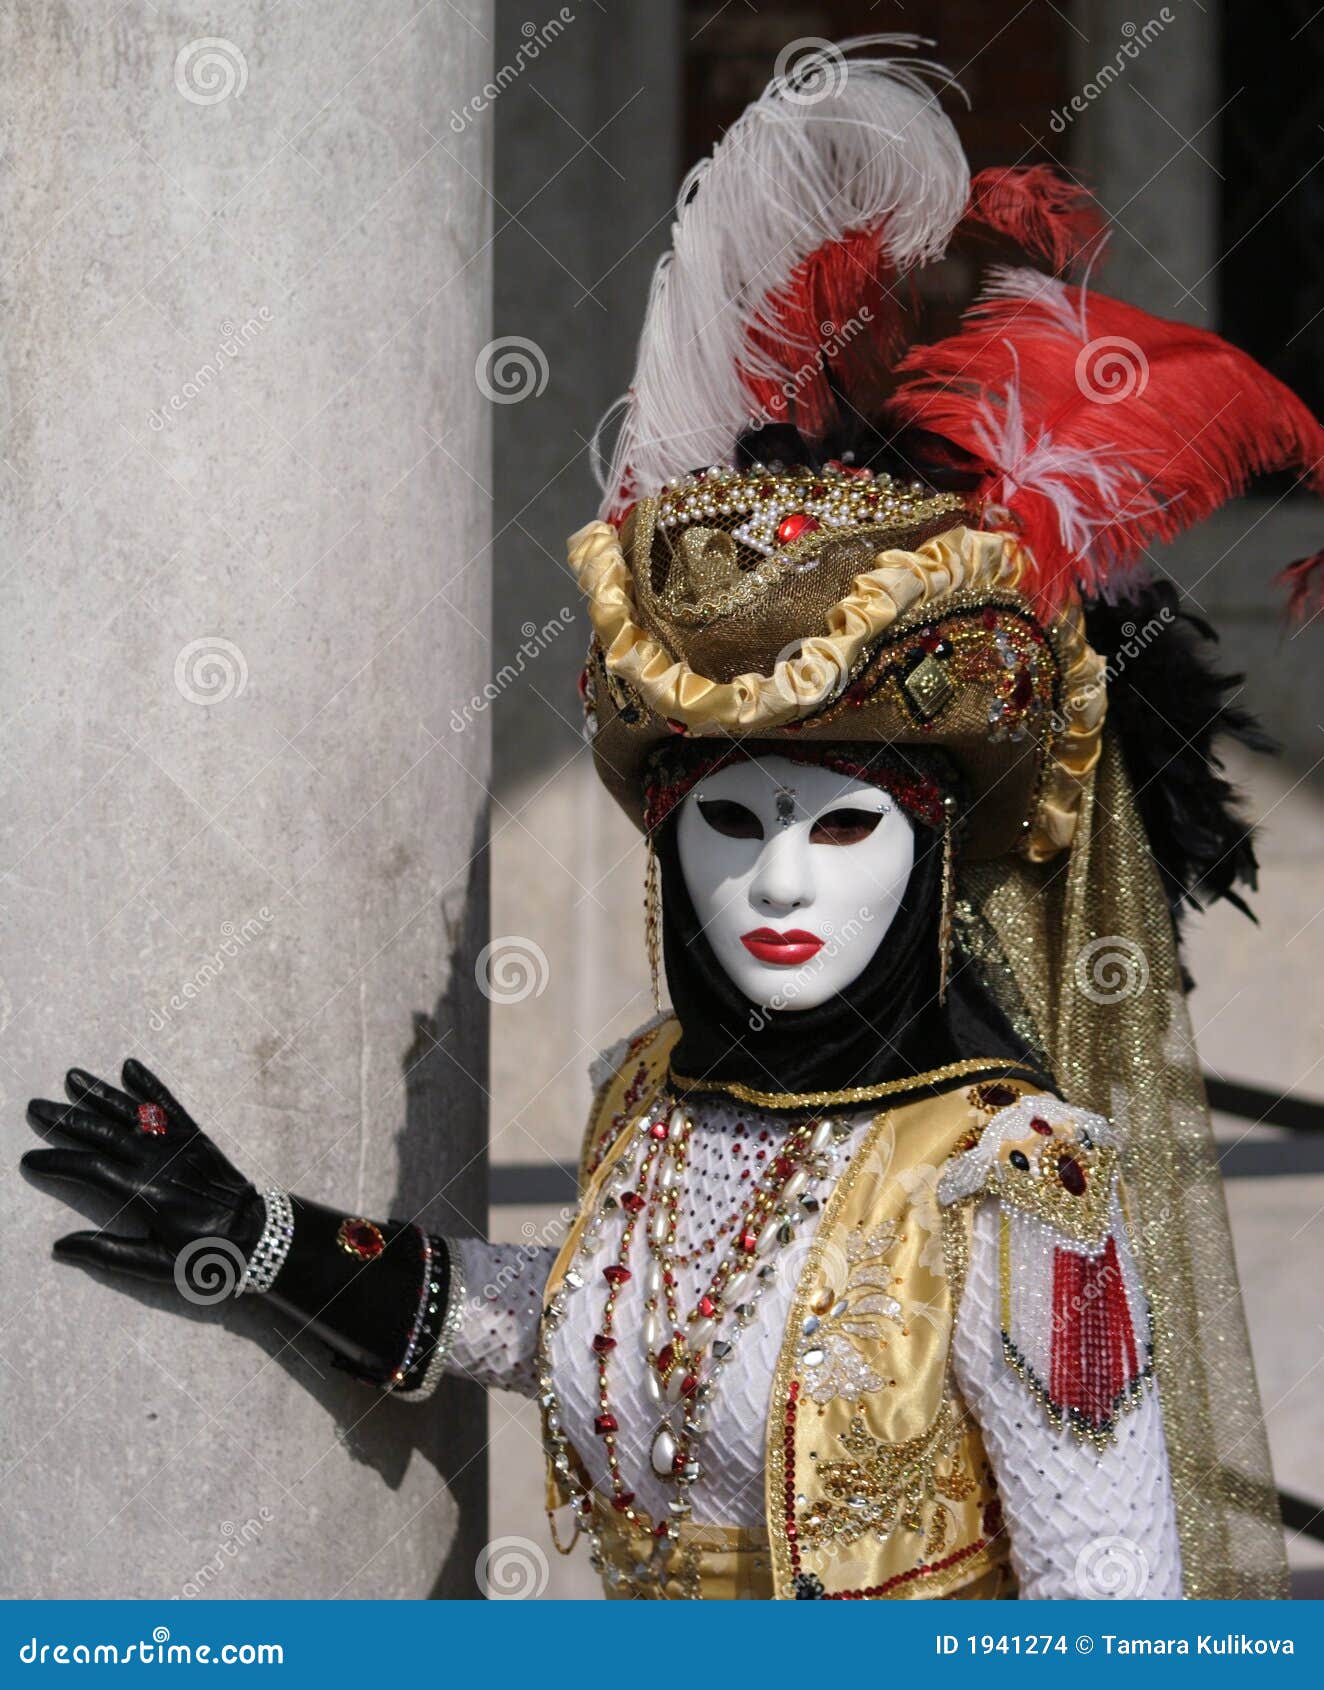 venice carnival - torero costume